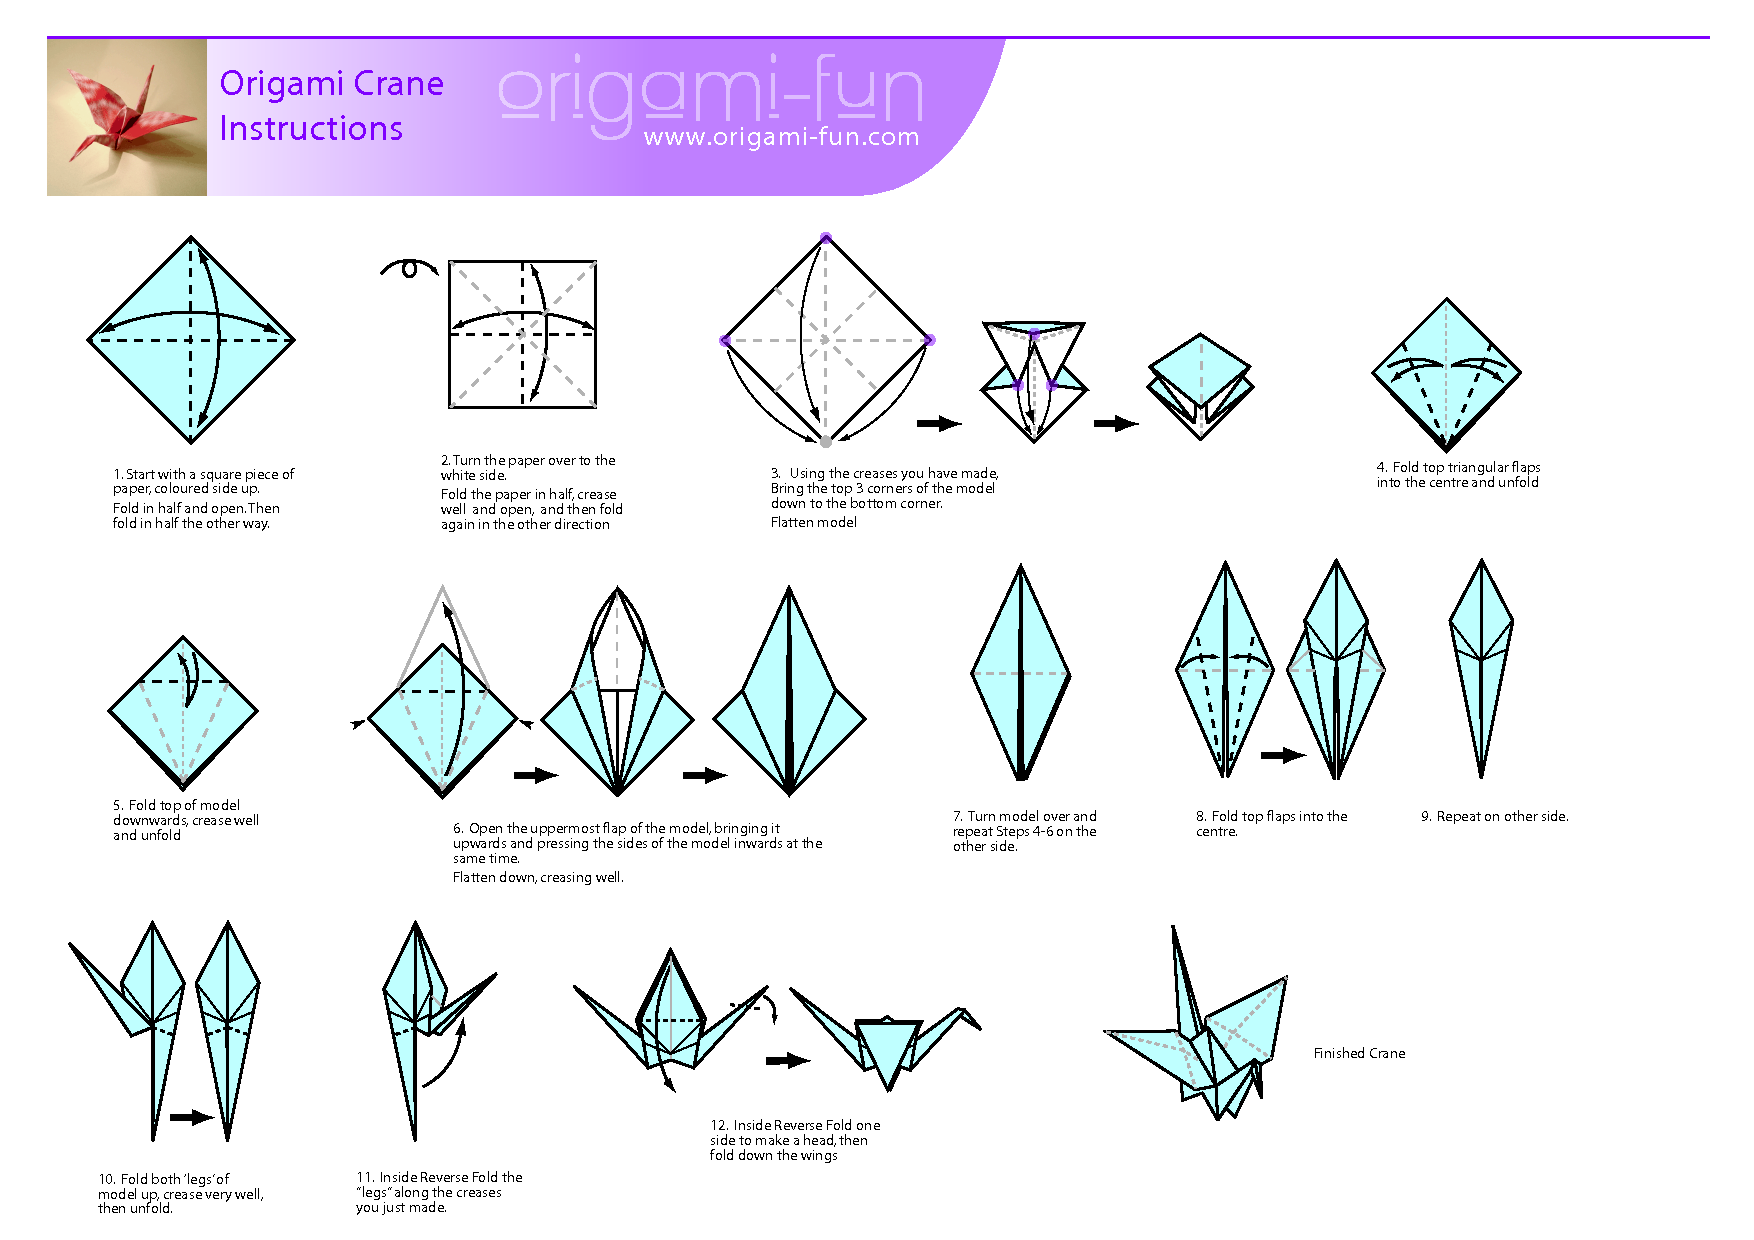 Как сделать оригами журавлика из бумаги поэтапно